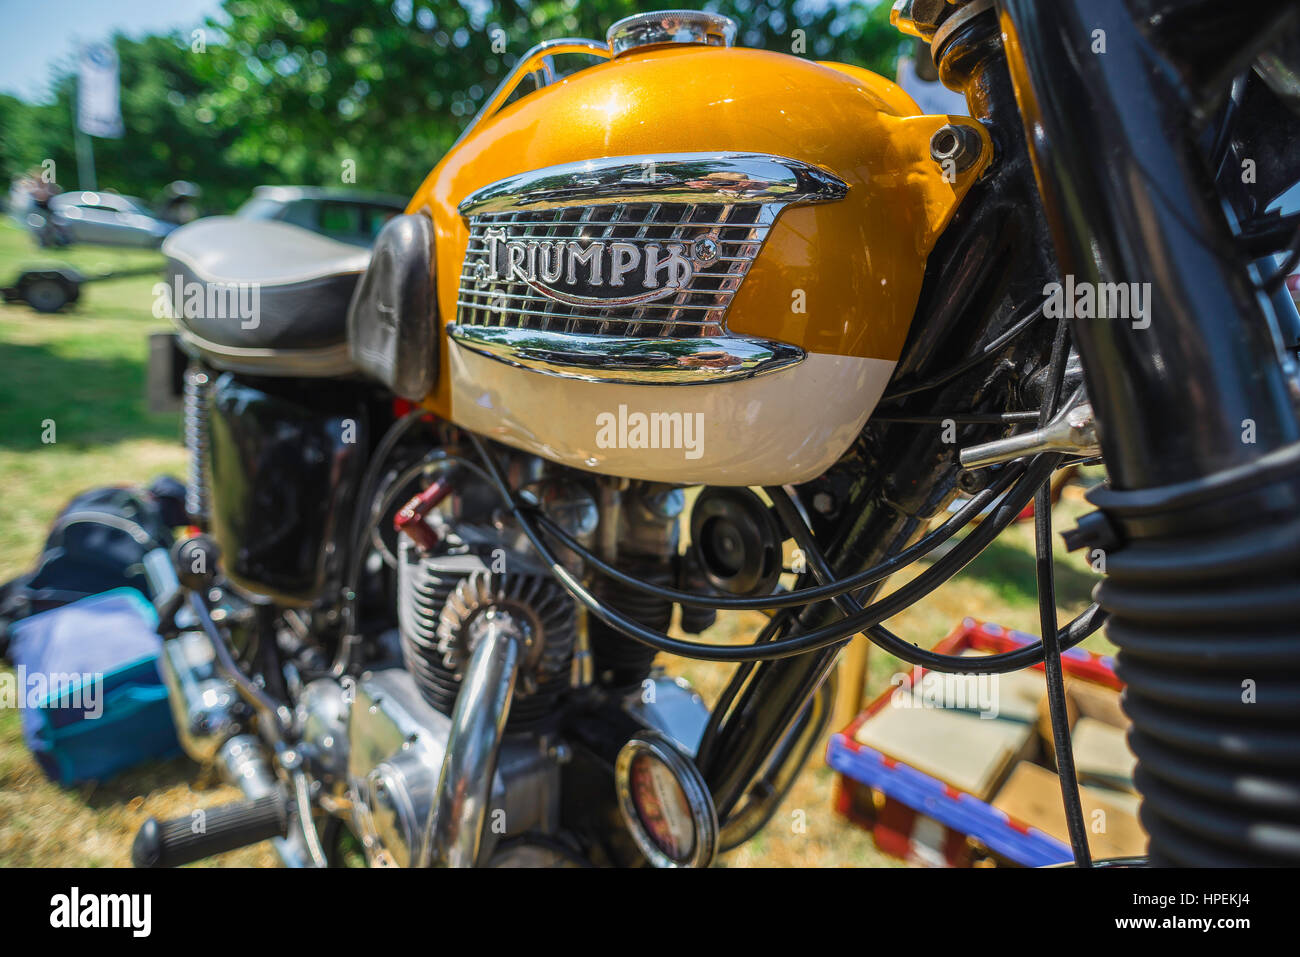 Triumph BONNEVILLE UK, close-up de l'or et crème de réservoir d'essence d'un classique des années 1960 Triumph BONNEVILLE moto. Banque D'Images